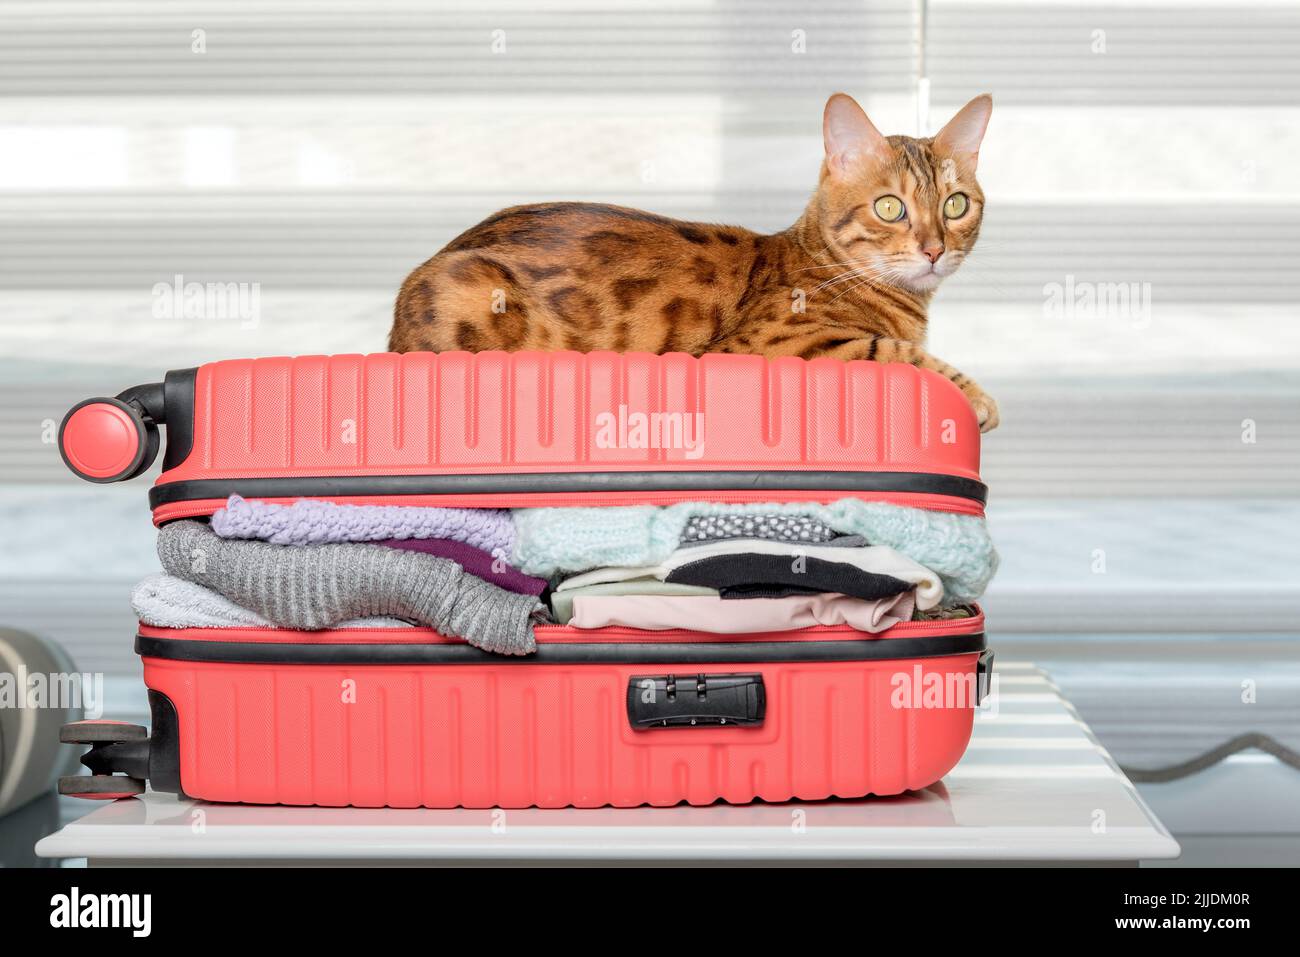 Die Ingwerkatze liegt auf einem Koffer voller Kleidung und Sachen für den Rest. Sommerreisen, Reisevorbereitung, Gepäckpacken. Stockfoto